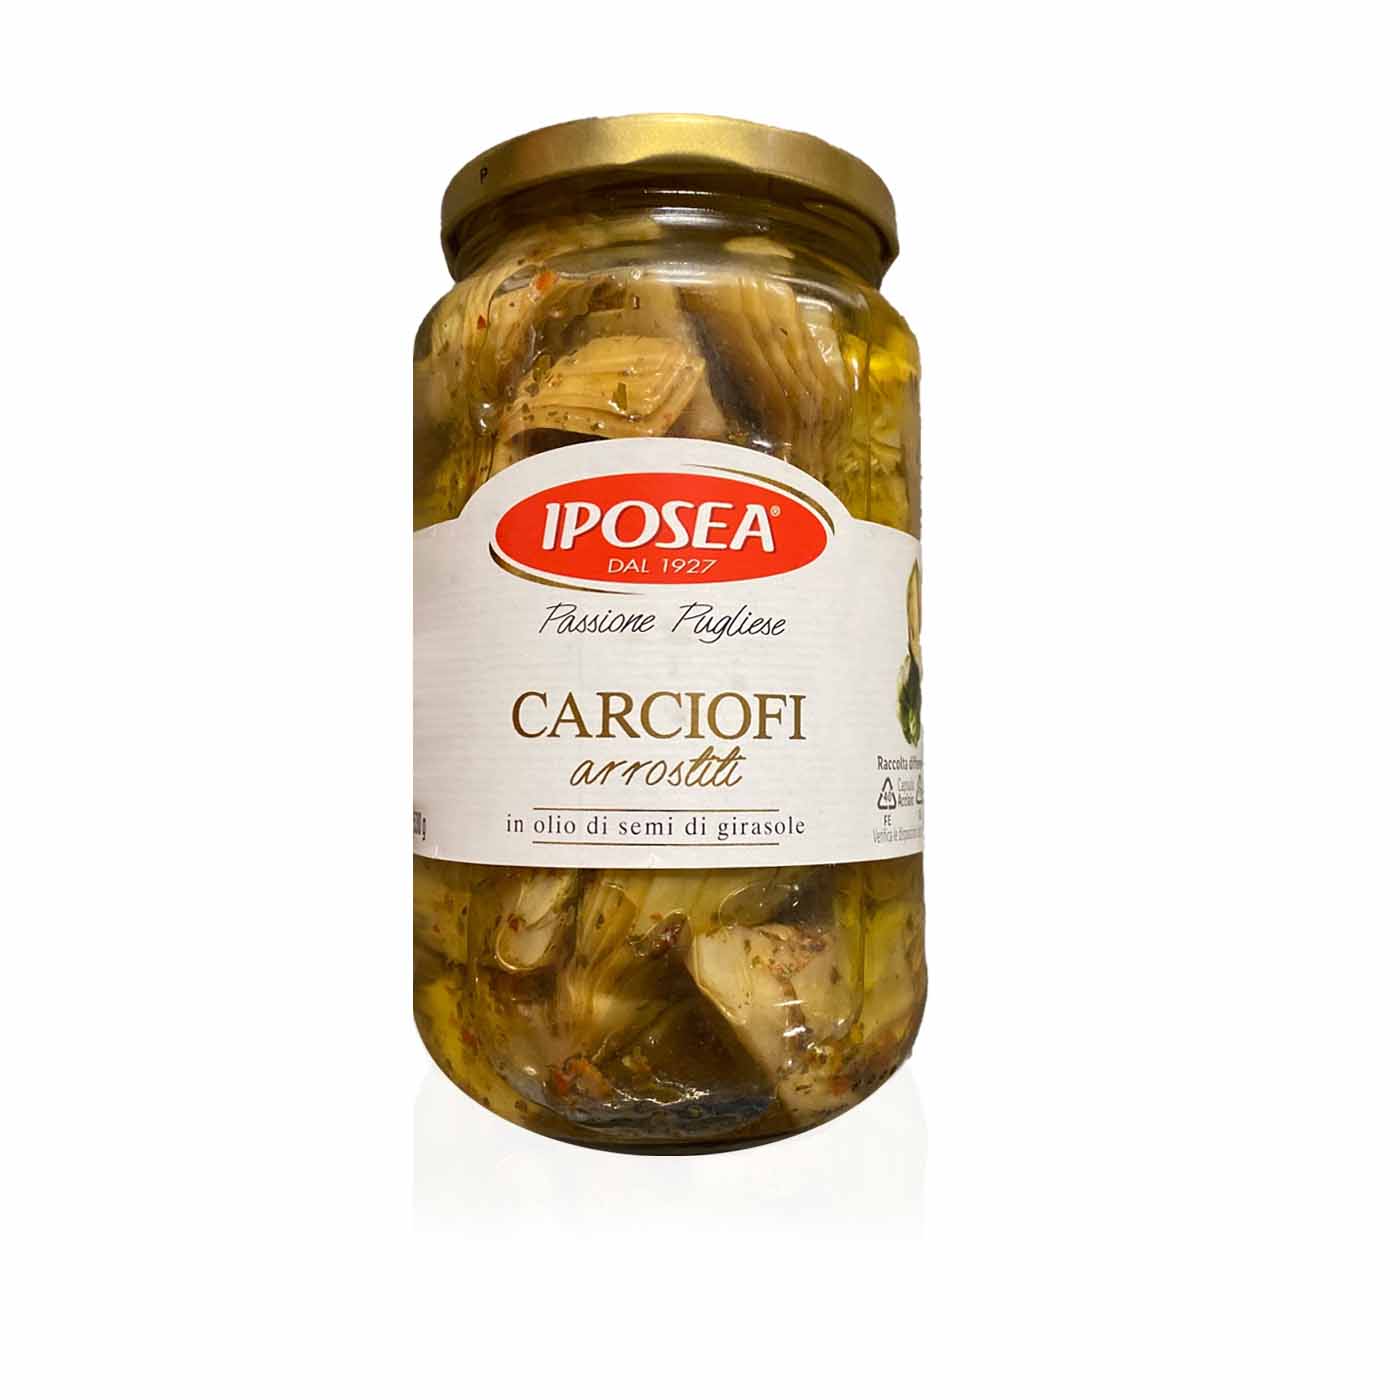 IPOSEA Carciofi arrostiti - Artischocken gegrillt- 0,530kg - italienisch-einkaufen.de